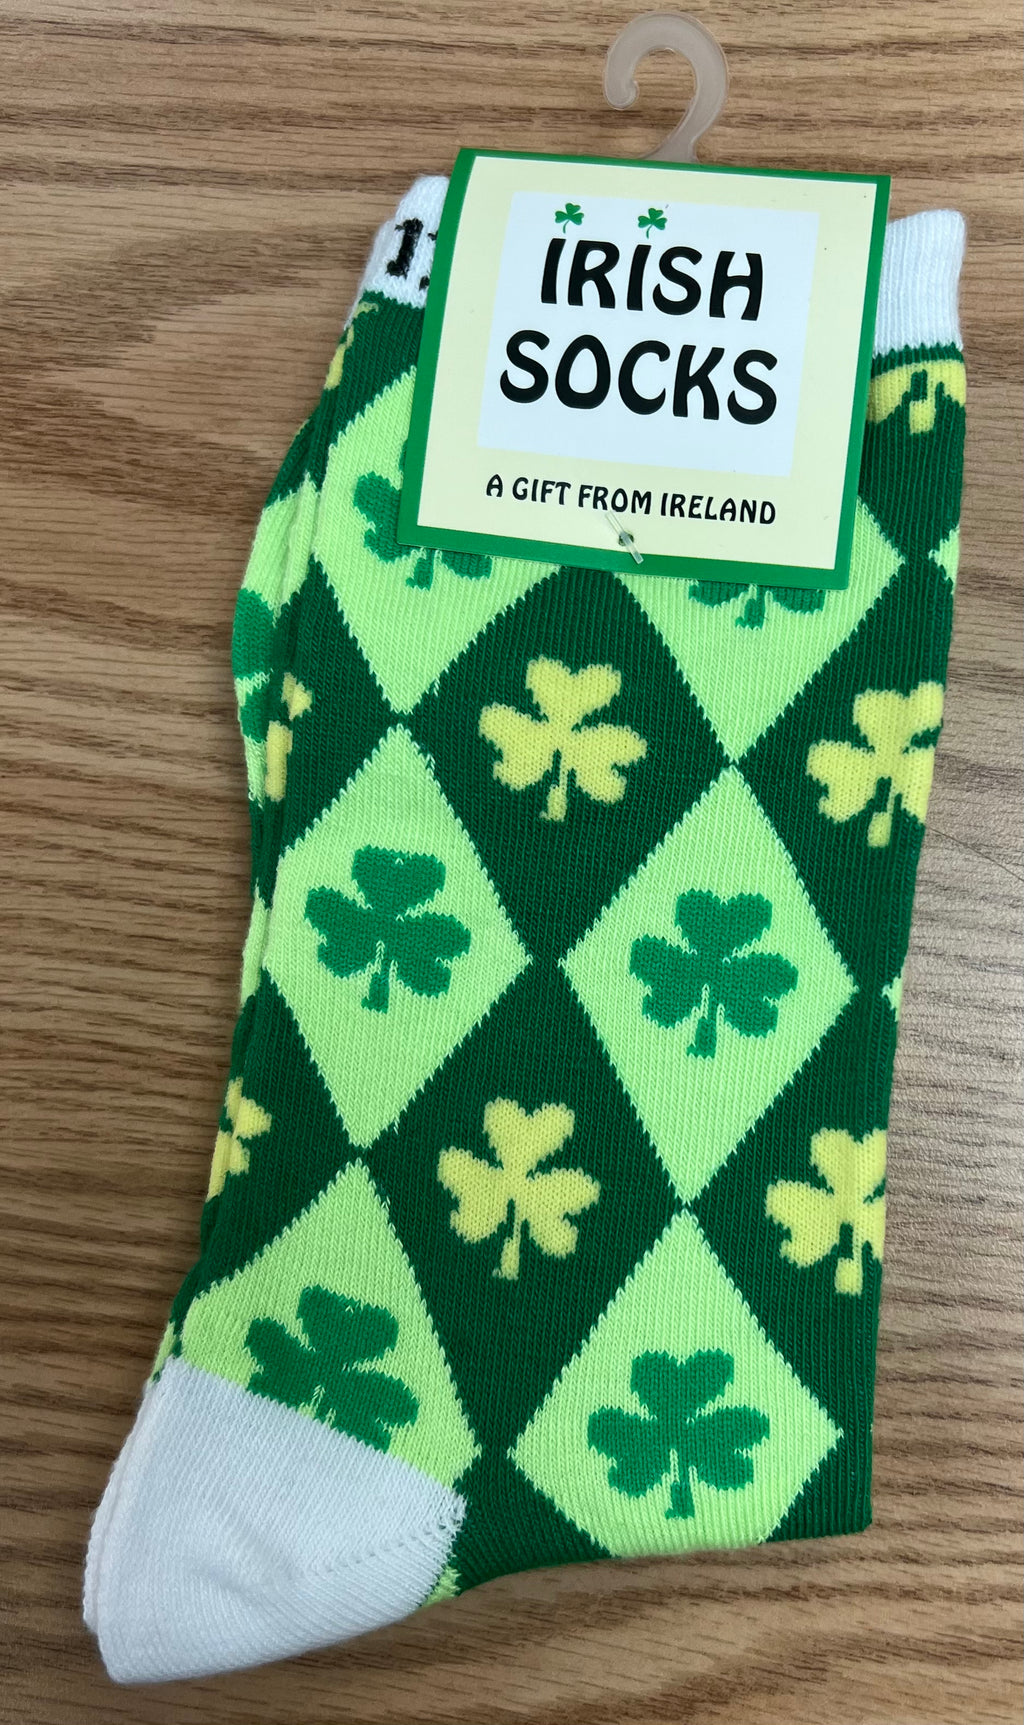 Irish socks soc24m